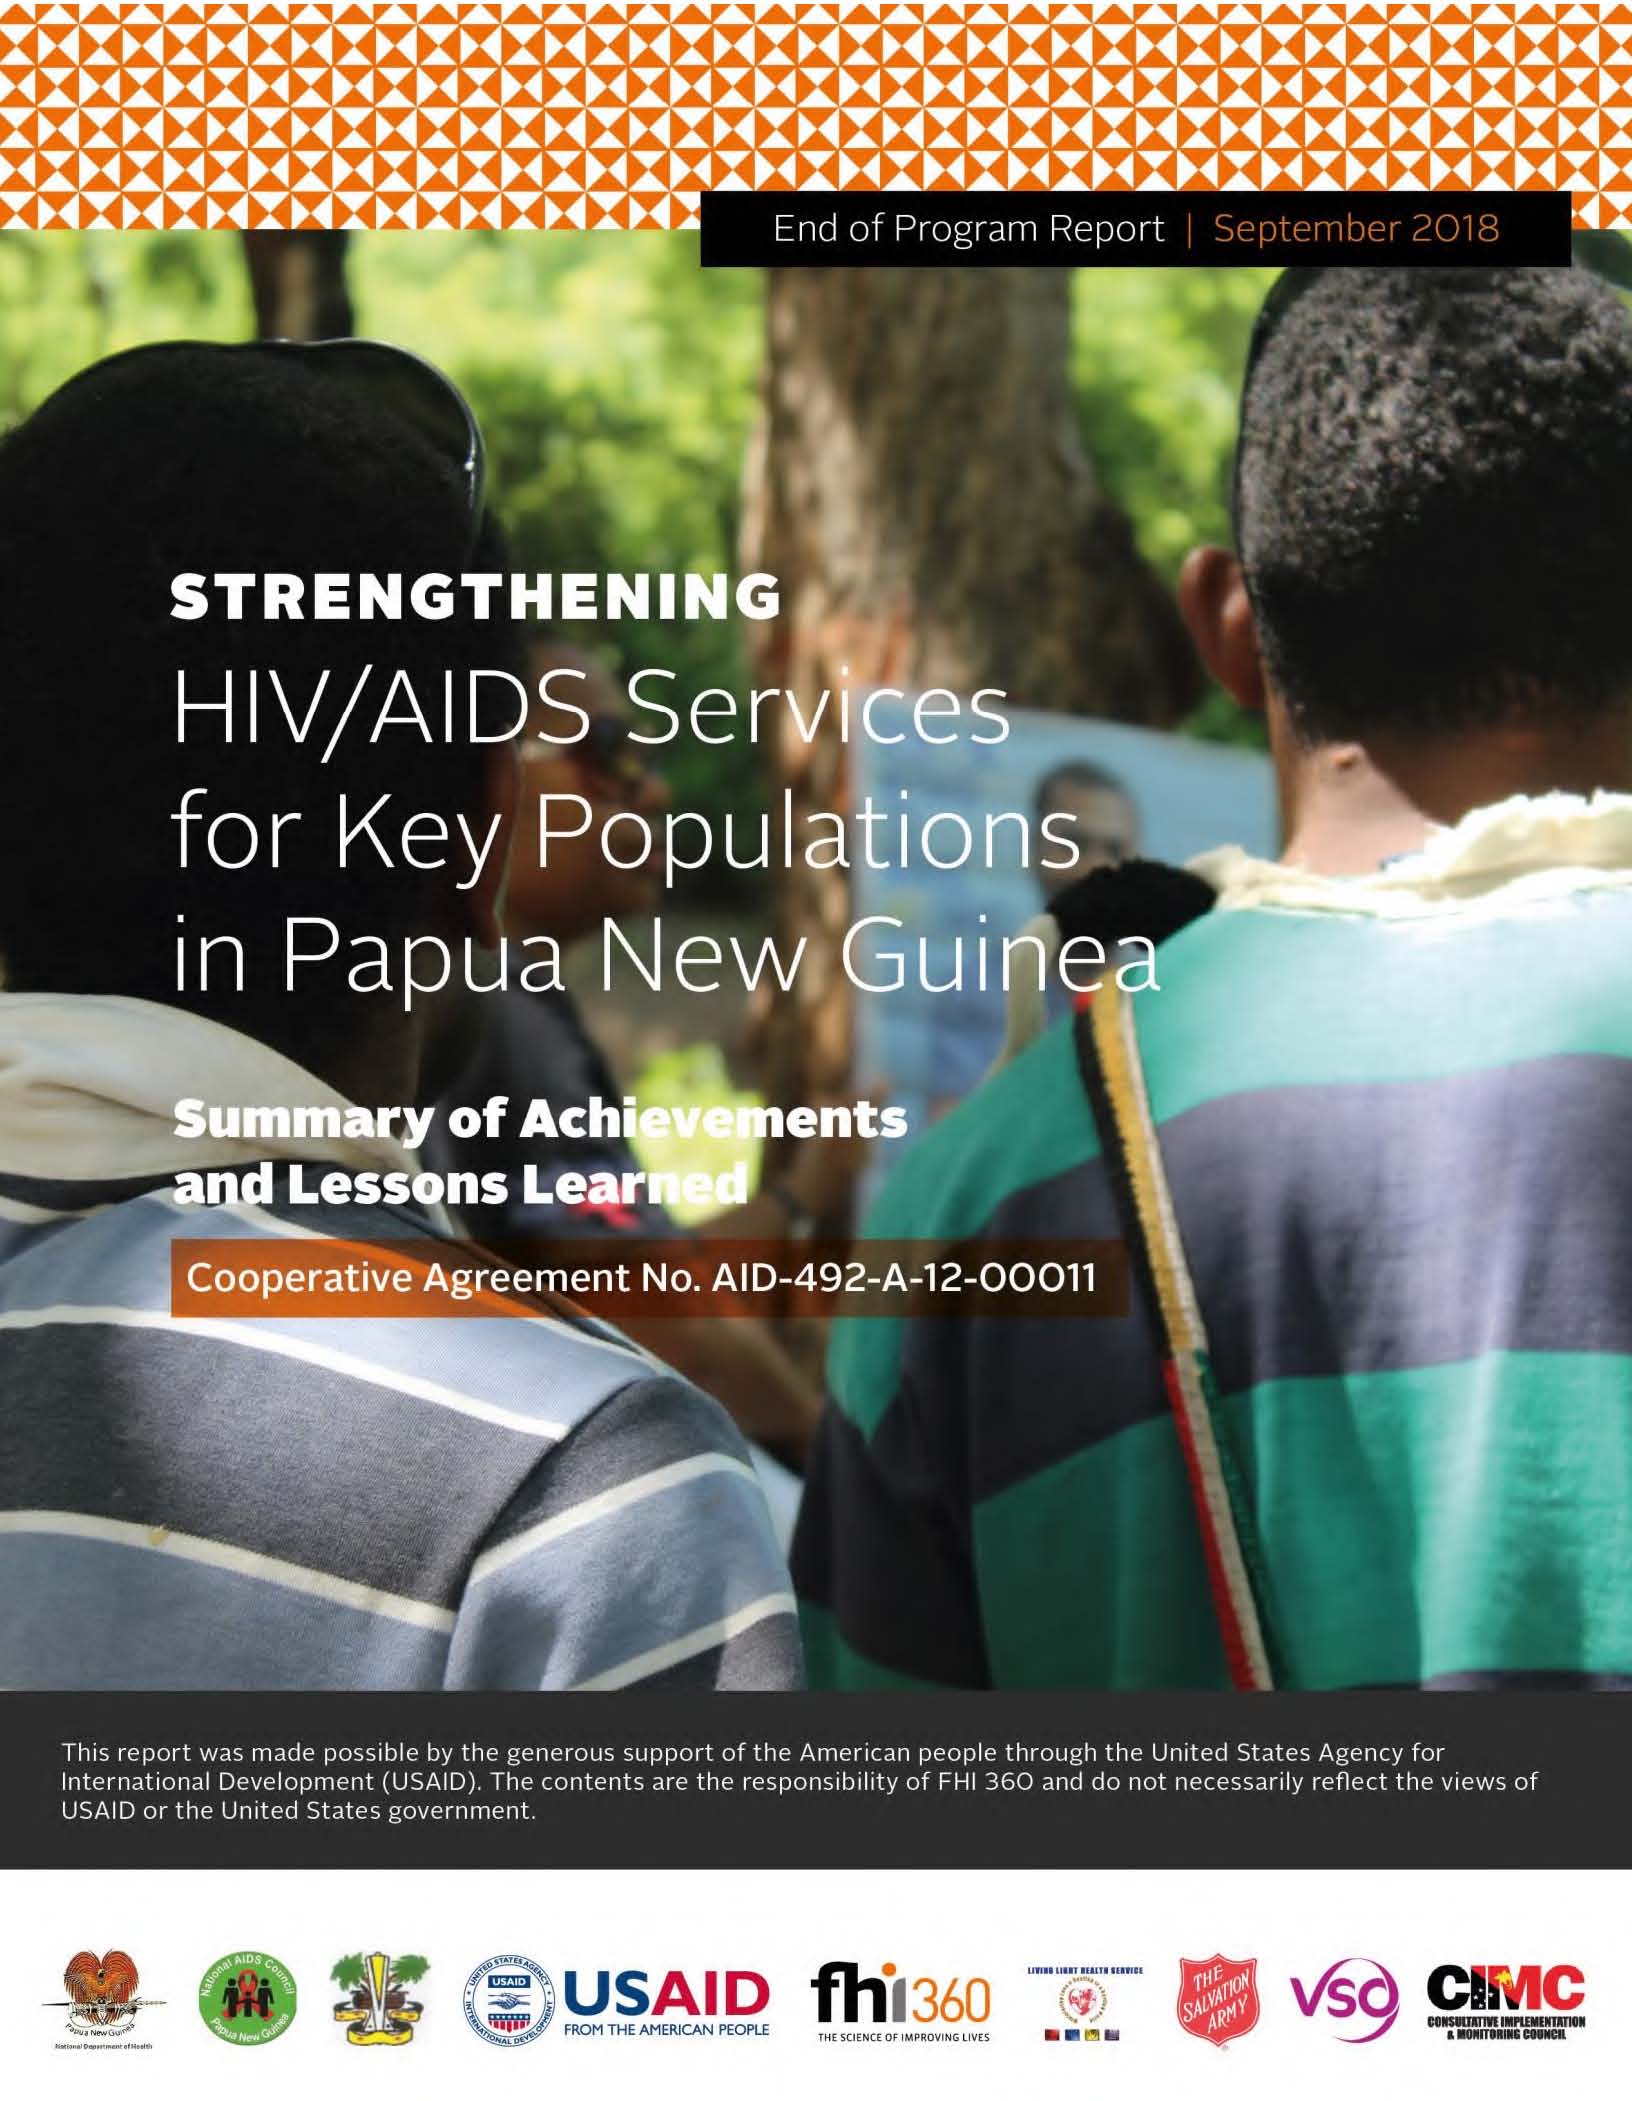 Renforcement des services de lutte contre le VIH/sida pour les populations clés en Papouasie-Nouvelle-Guinée : résumé des réalisations et des enseignements tirés